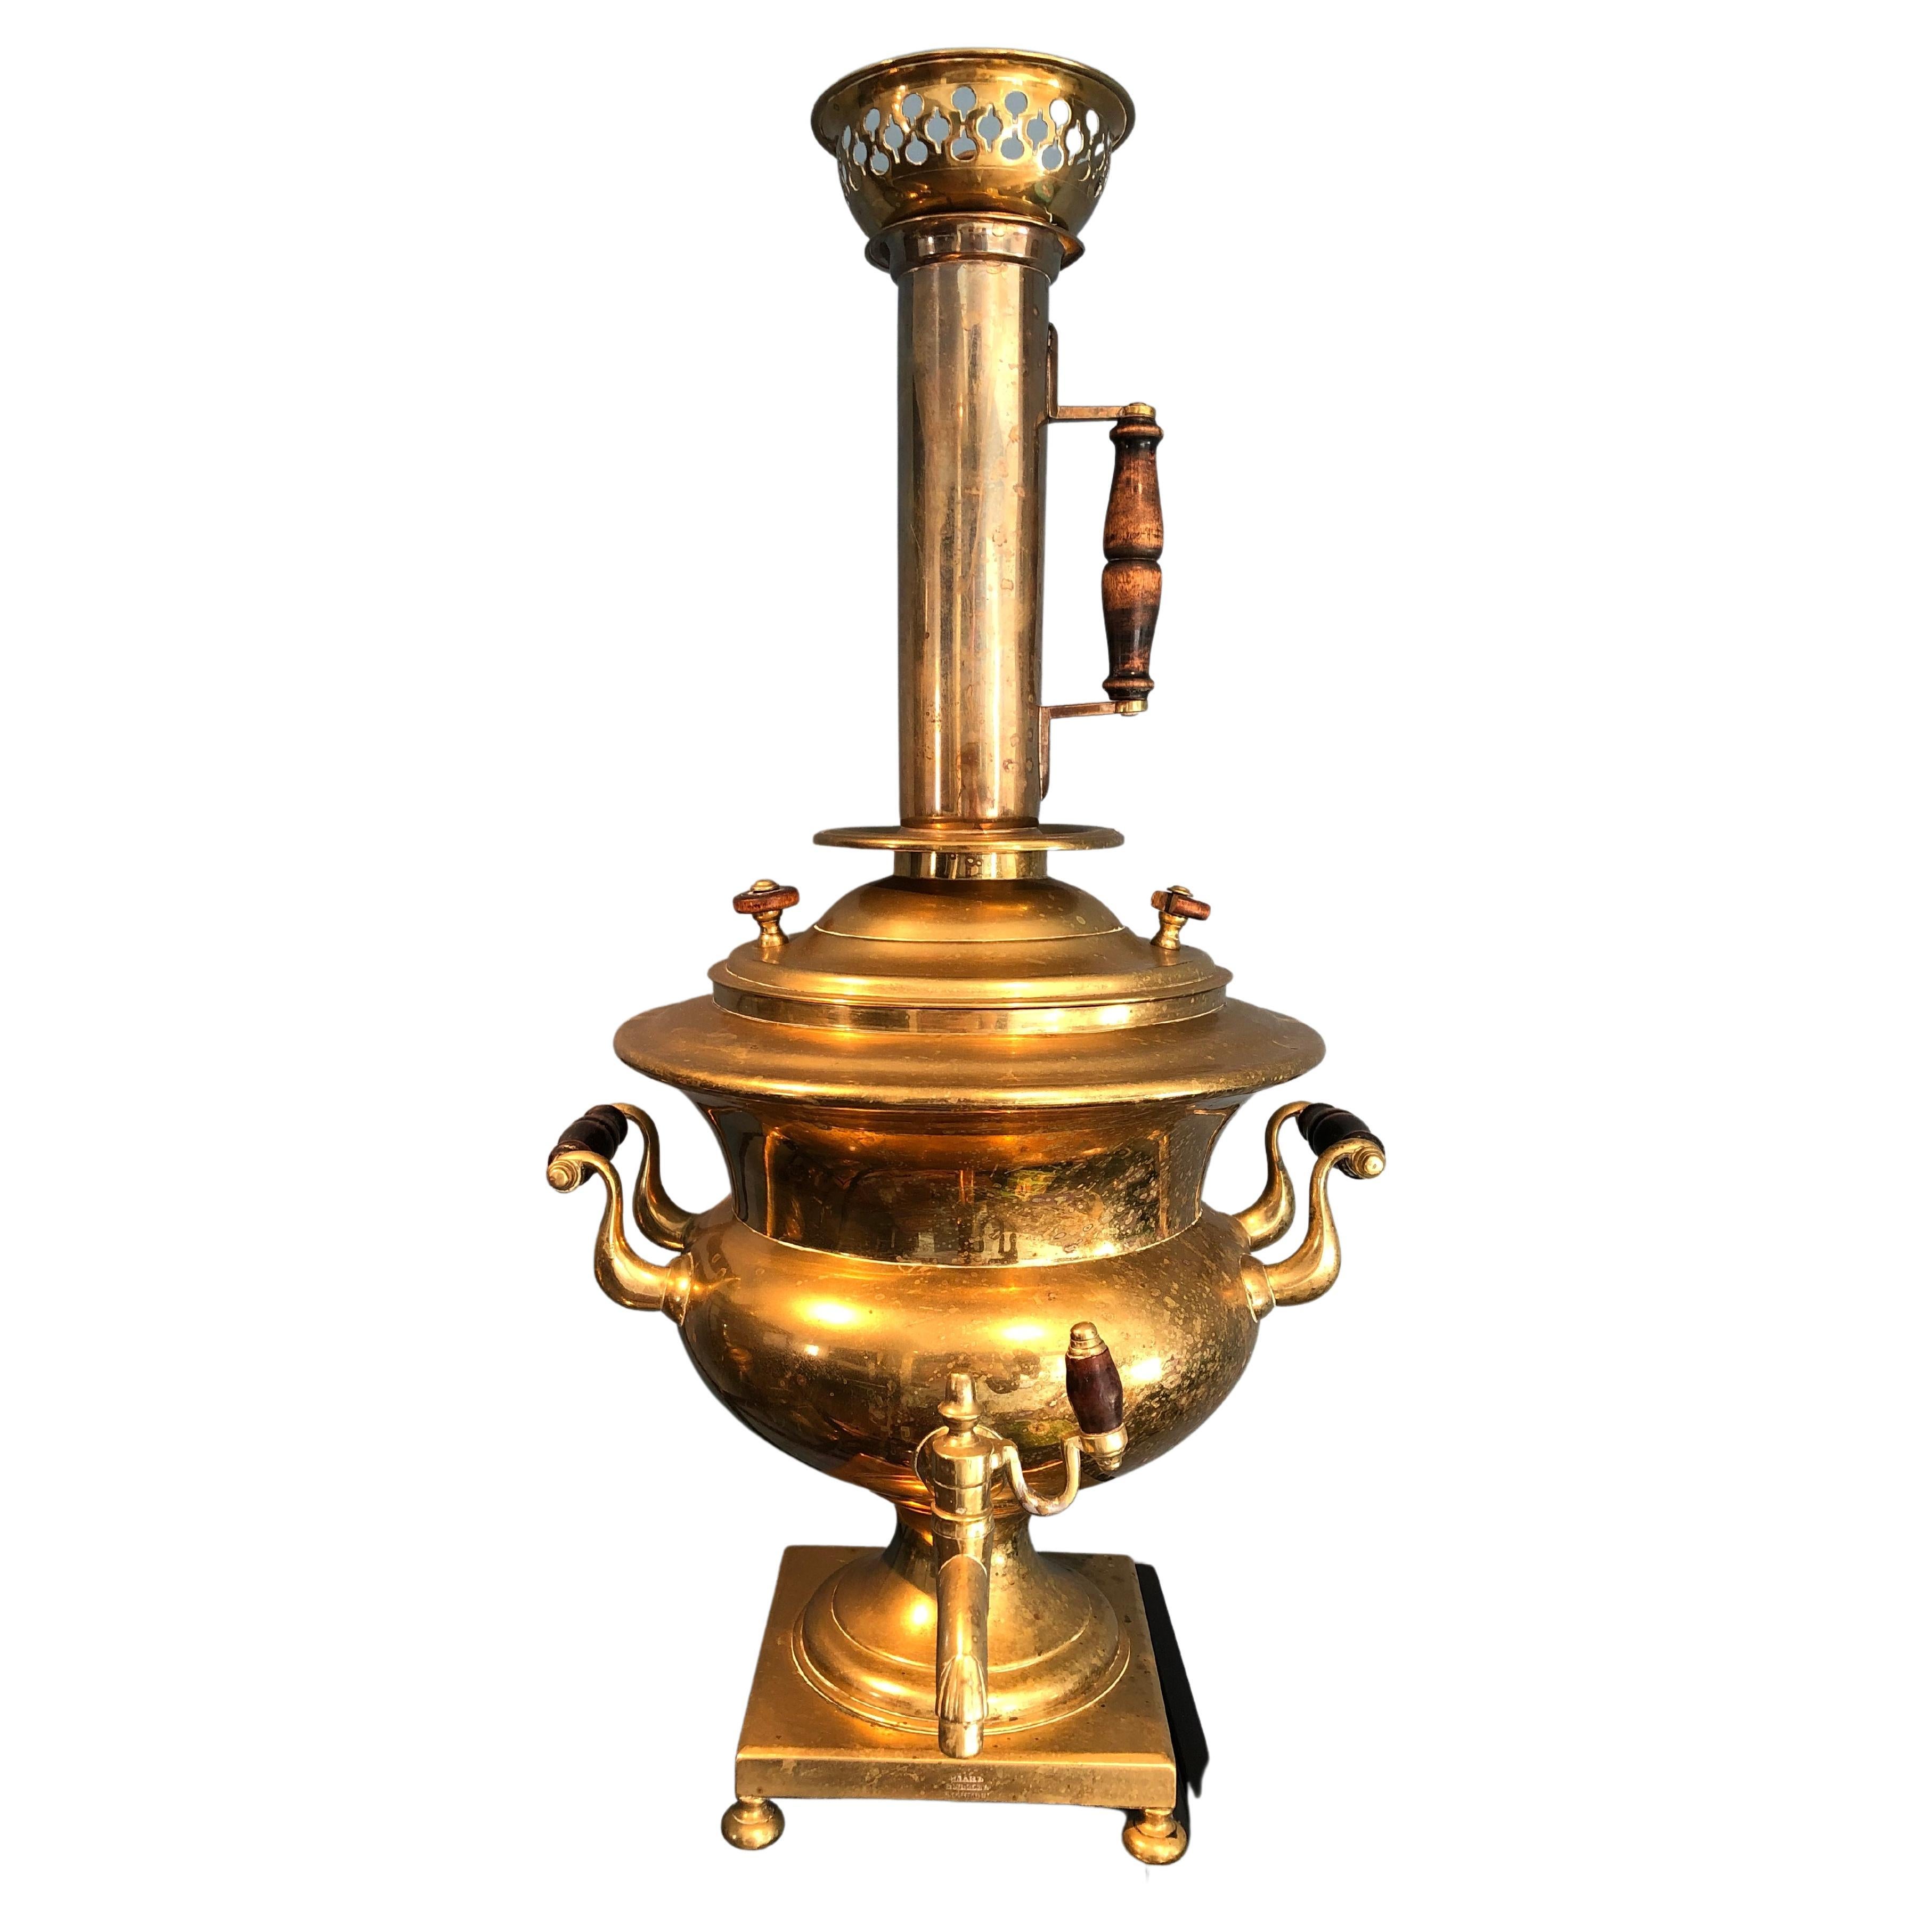 Antique Russian Brass Samovar 19th Century “Ivan Pushkov v Danilove”